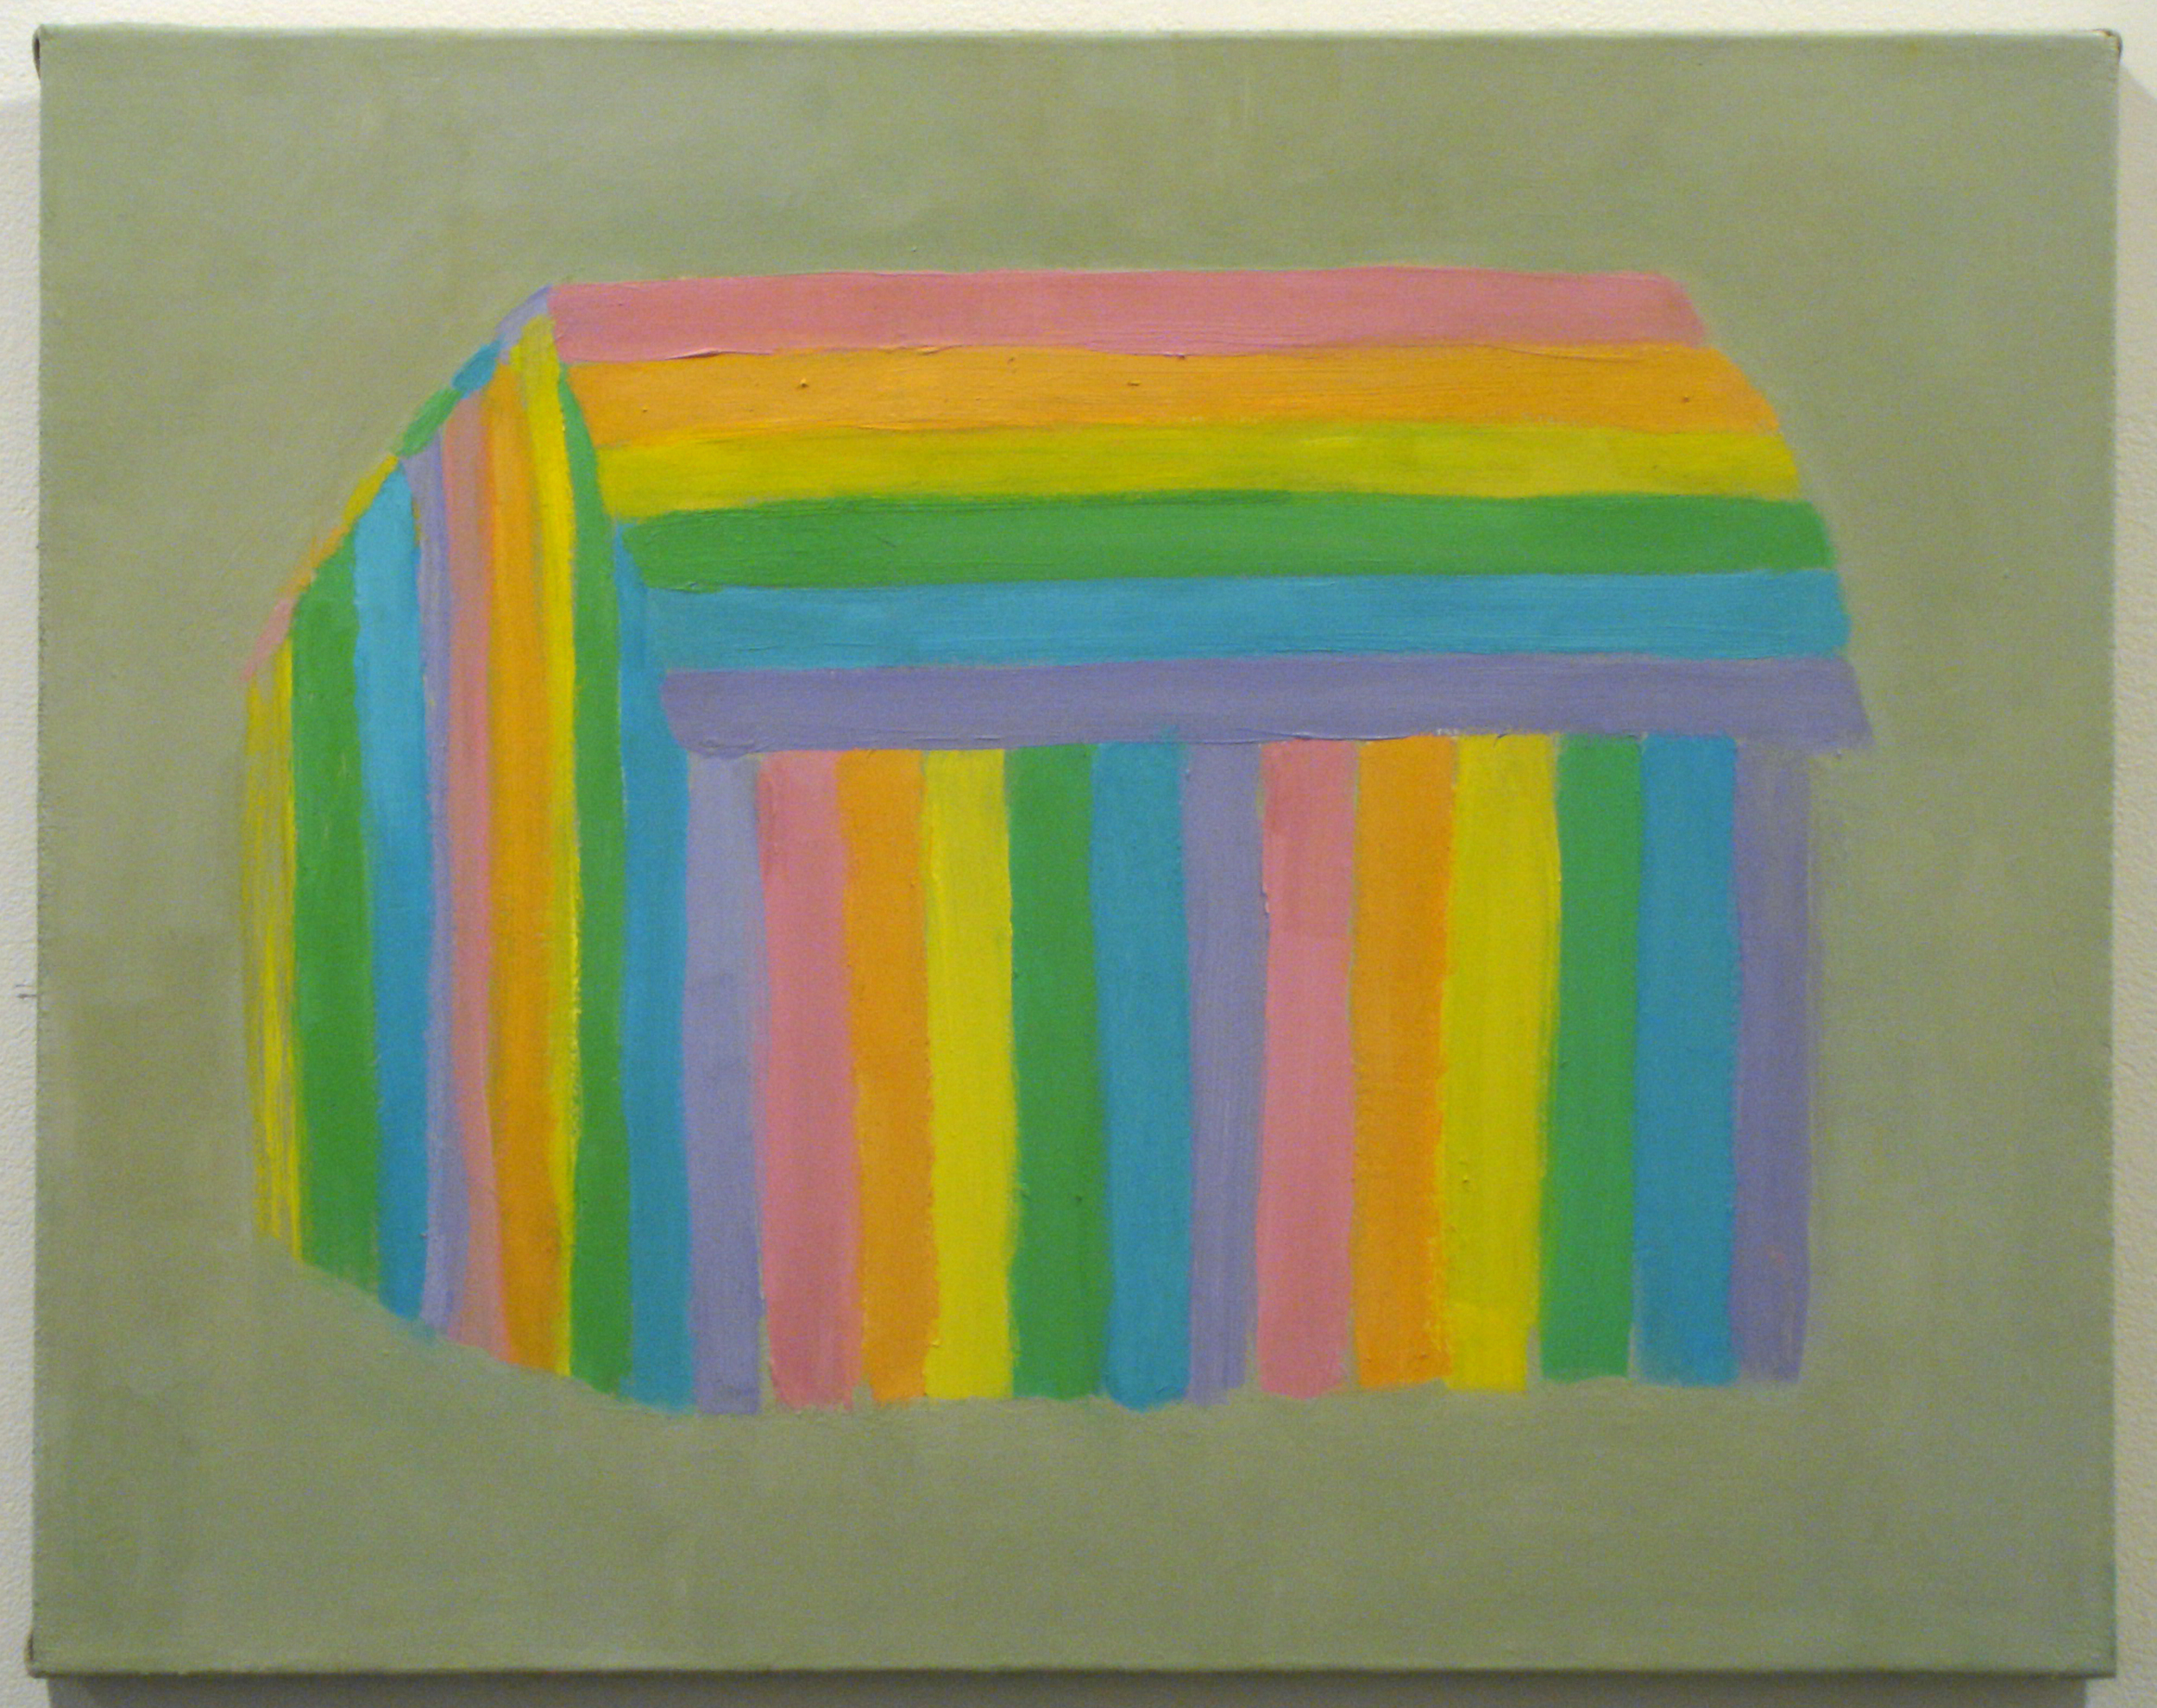  Gay Barn oil on canvas, 18"x24" 2004 